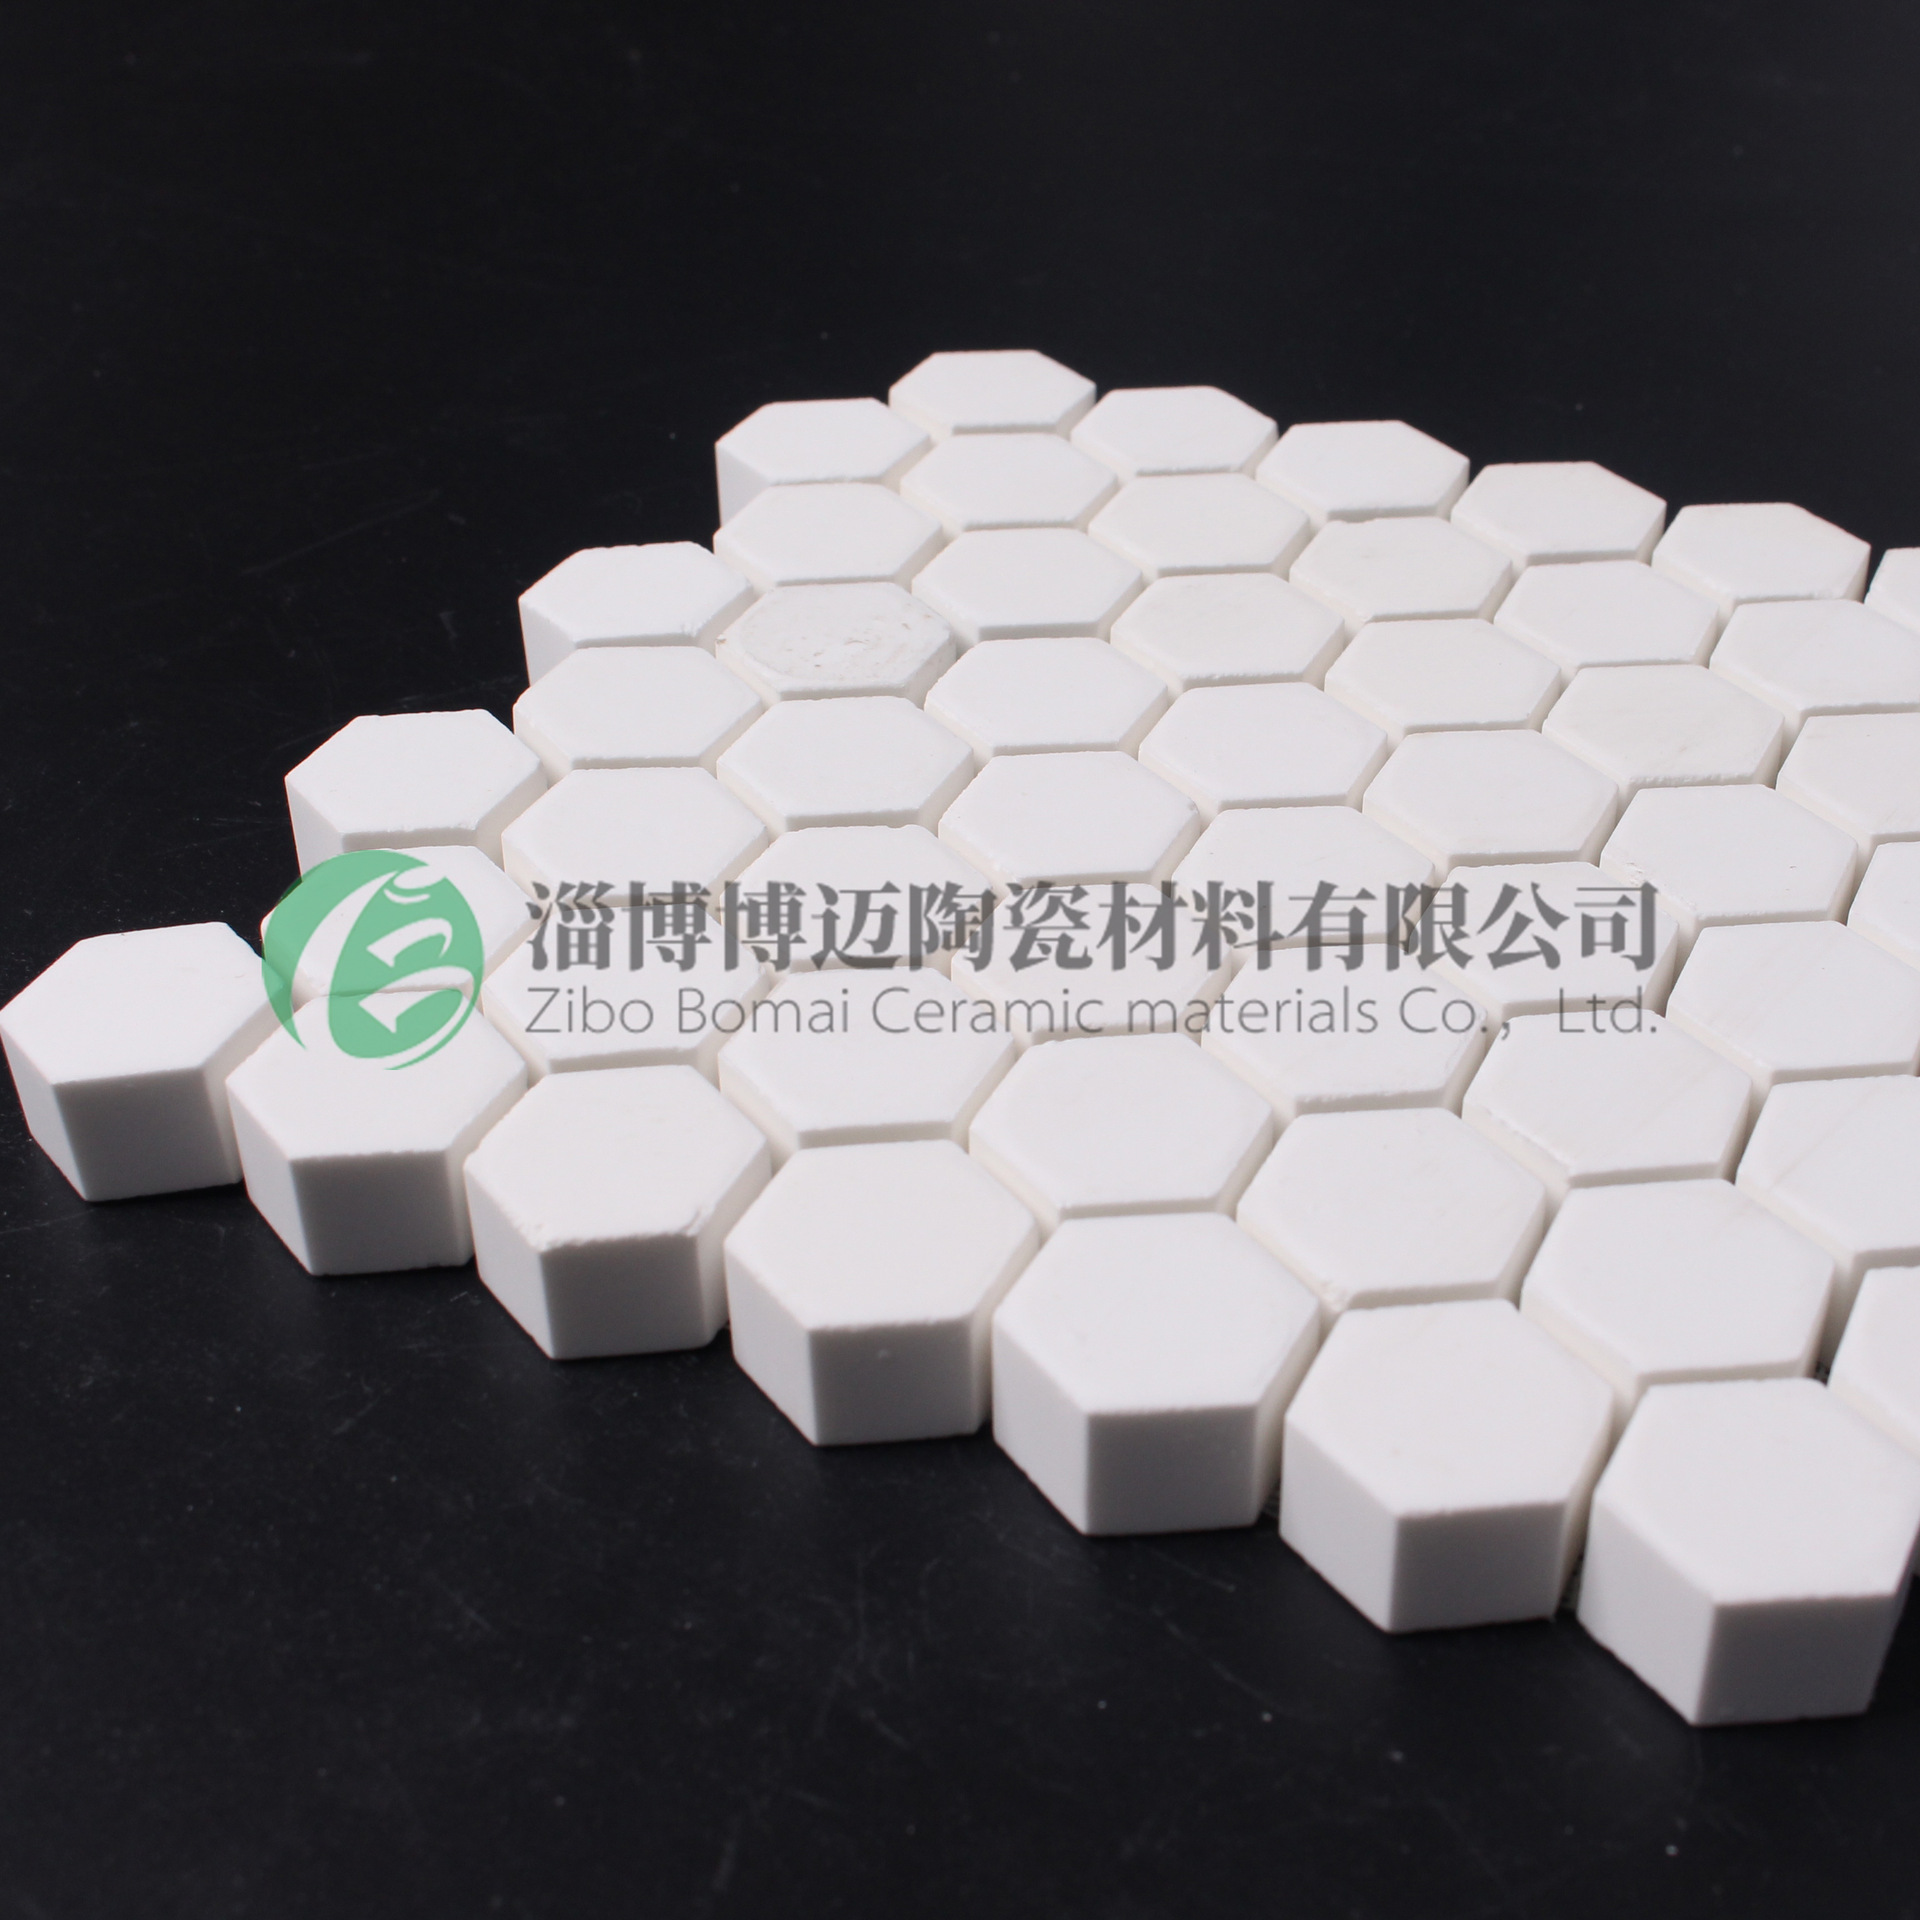 5mm 高铝耐磨瓷片4mm 高耐磨氧化铝陶瓷片 六角片耐磨陶瓷4